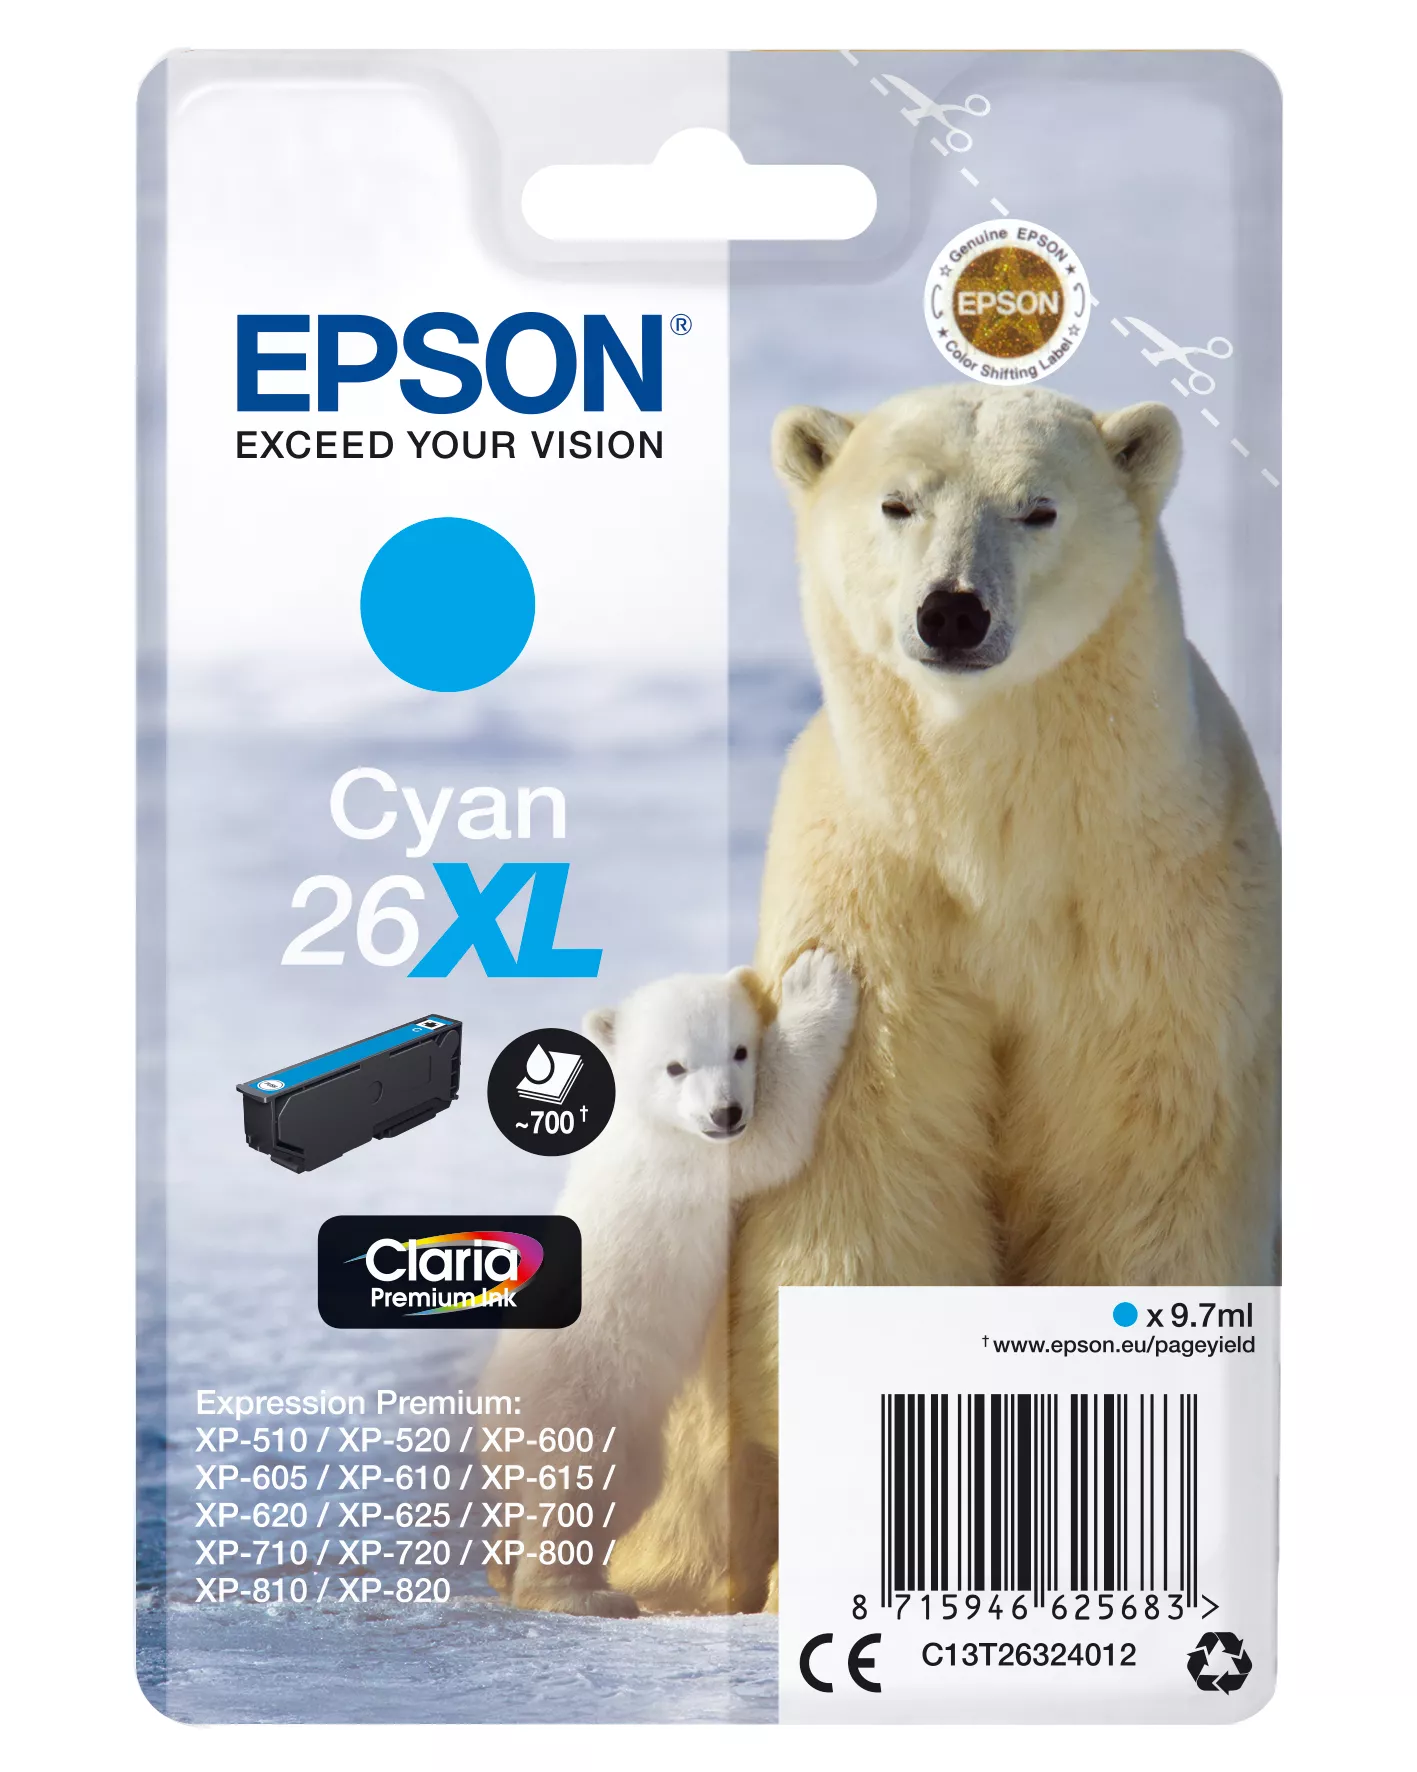 Achat EPSON 26XL cartouche dencre cyan haute capacité 9.7ml 700 au meilleur prix